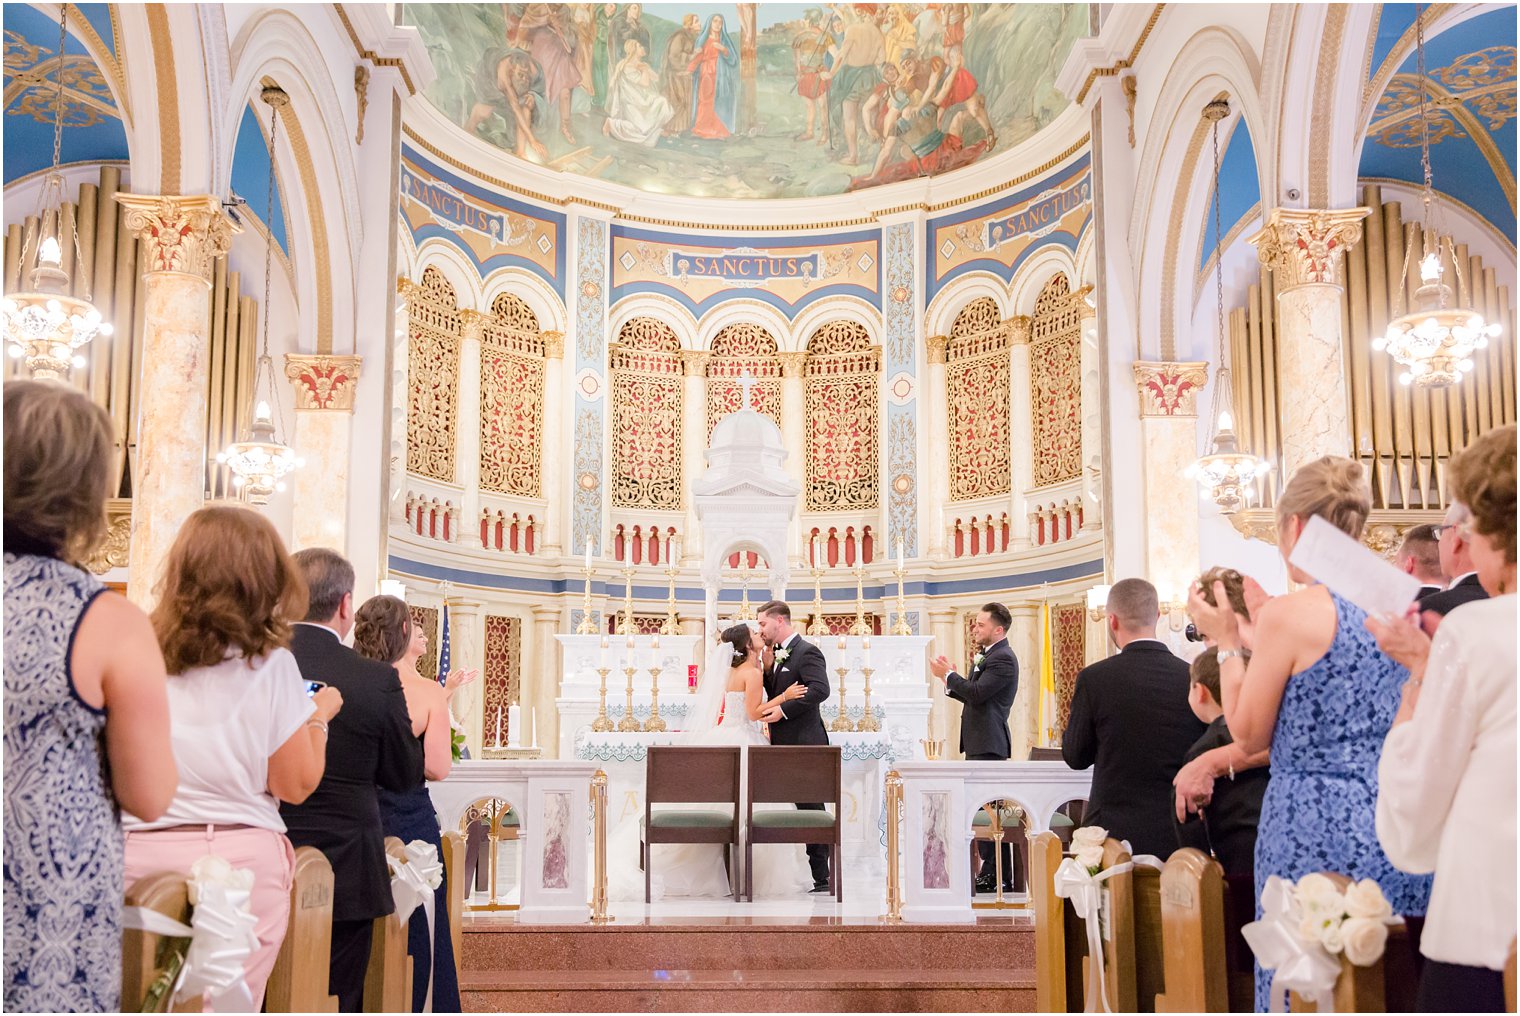 Bride and groom kissing at altar at St. Finbar Catholic Church